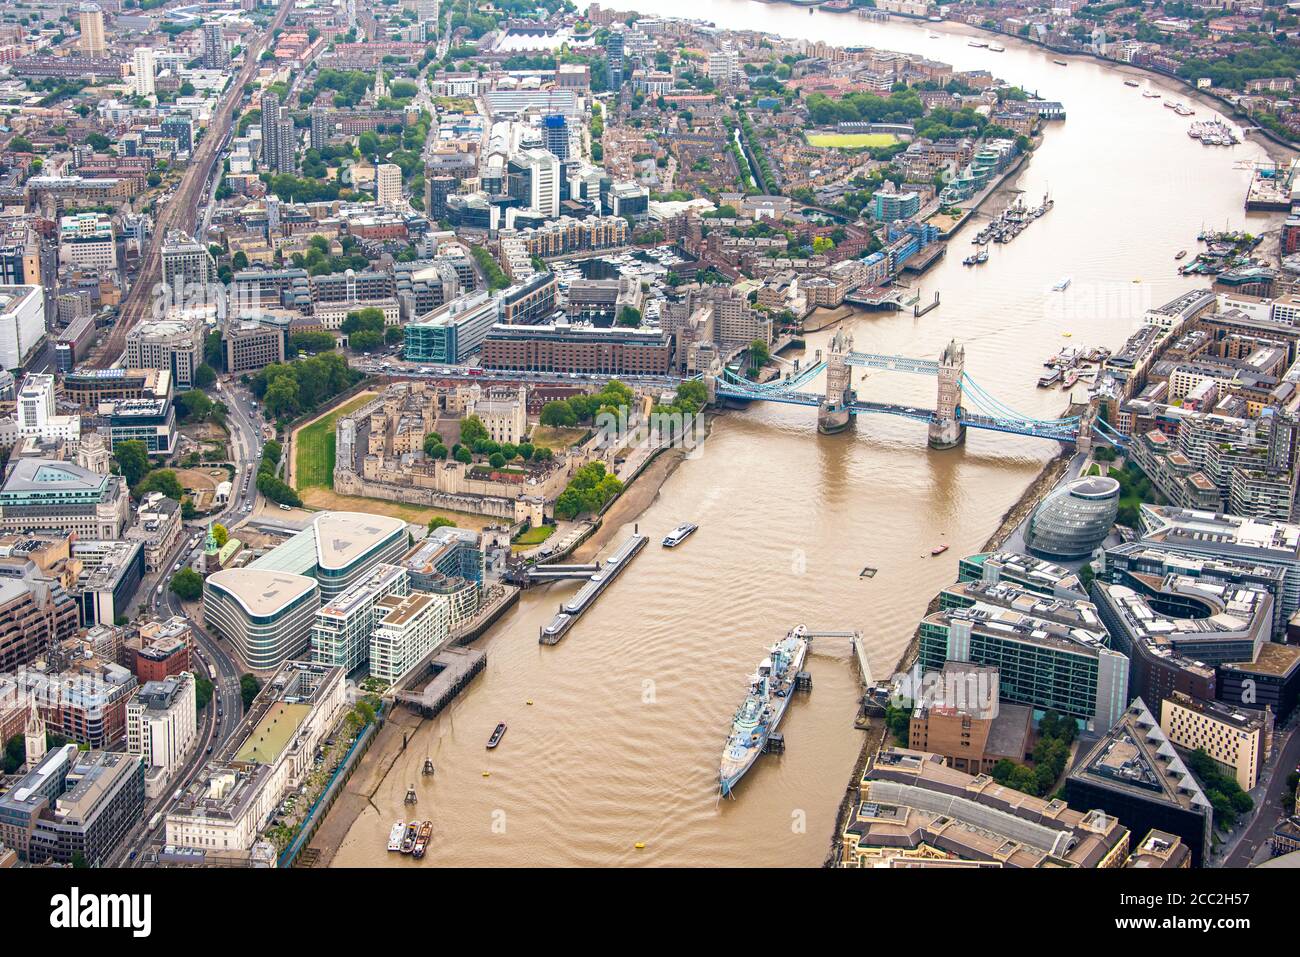 Vista aérea horizontal de HMS Belfast, Ayuntamiento, Torre de Londres y Tower Bridge mirando hacia el este de Londres. Foto de stock